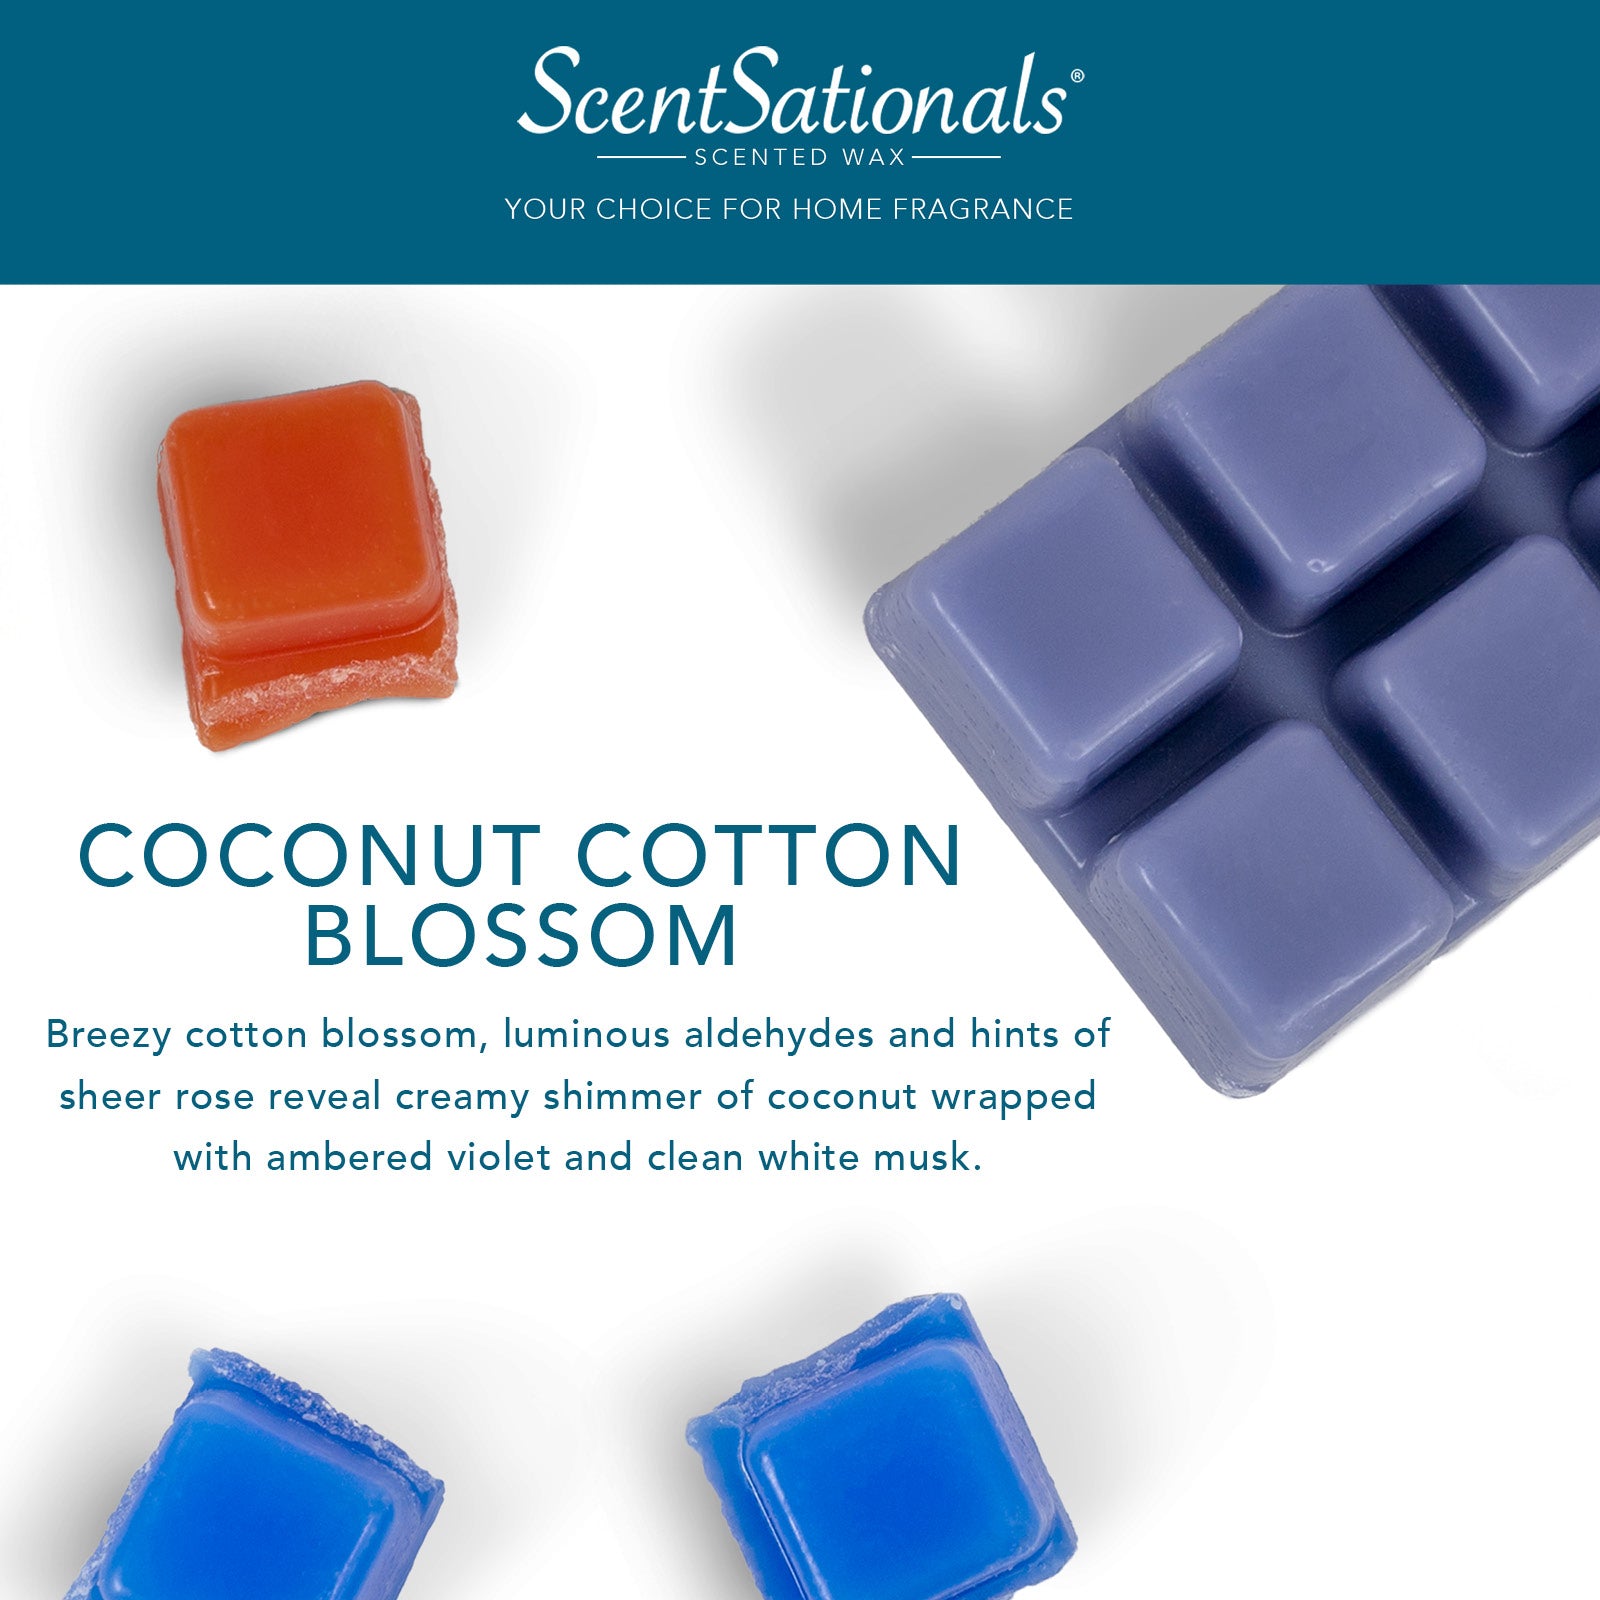 Coconut Cotton Blossom